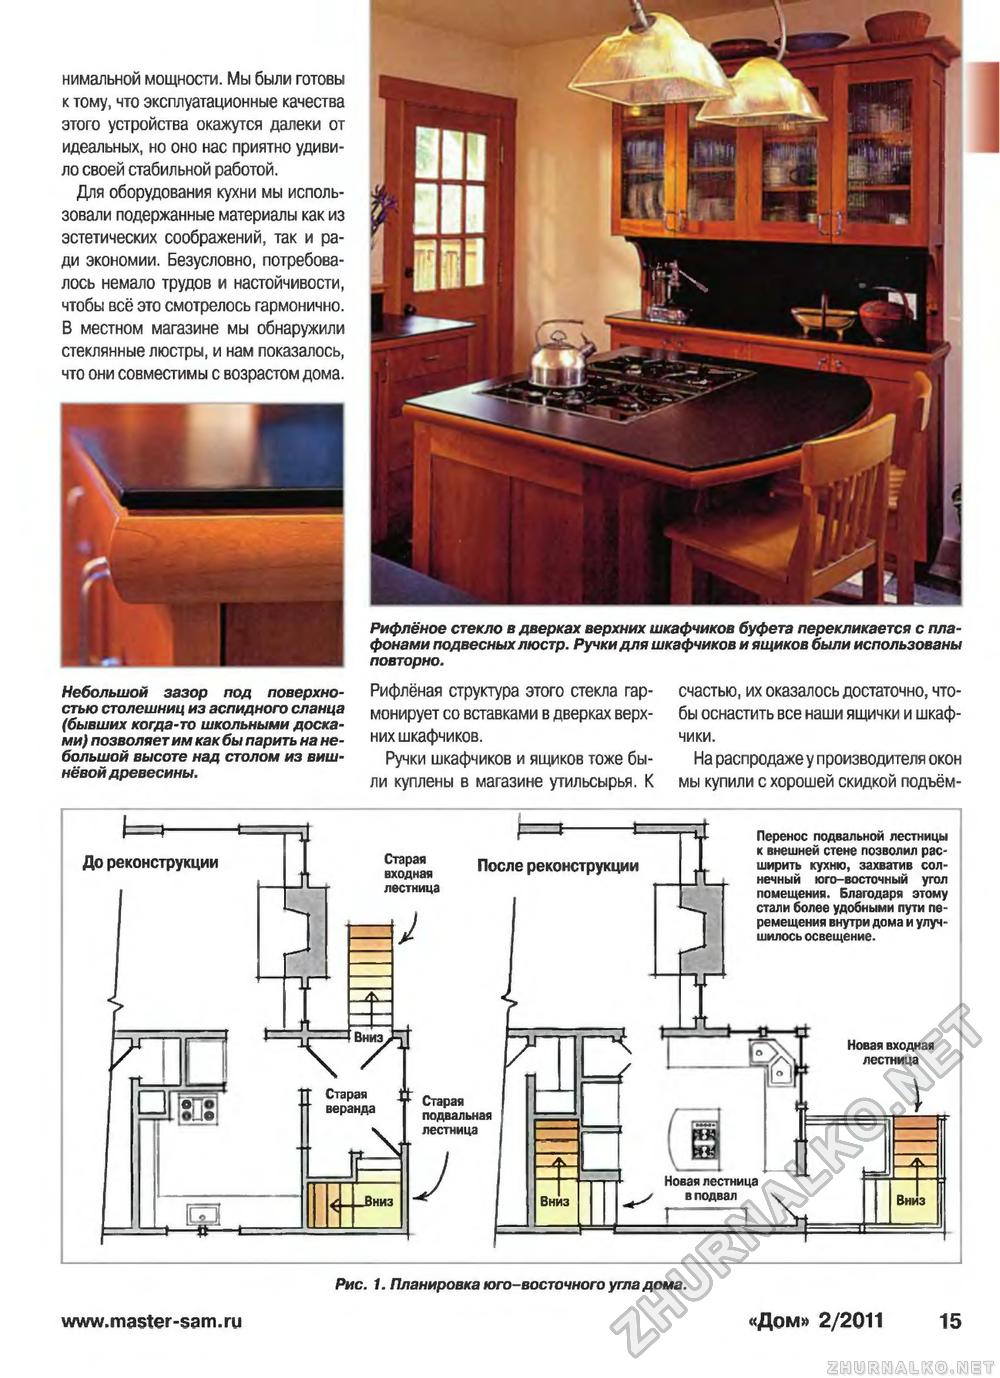 Дом 2011-02, страница 15